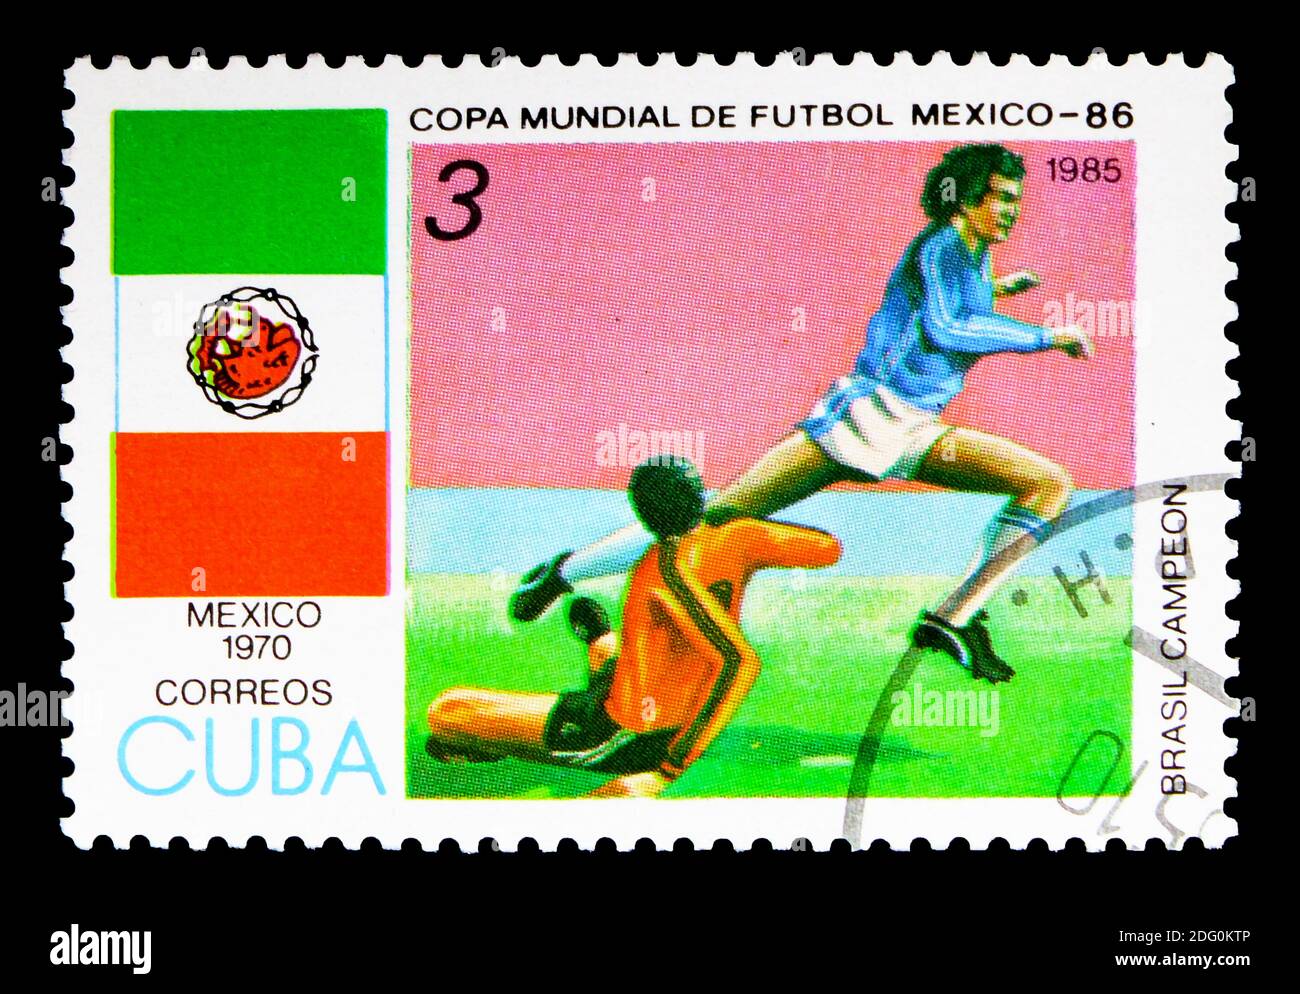 MOSKAU, RUSSLAND - 16. MAI 2018: Eine in Kuba gedruckte Marke zeigt FIFA World Cup, Mexiko-1970, FIFA World Cup 1986 - Mexico Serie, um 1985 Stockfoto